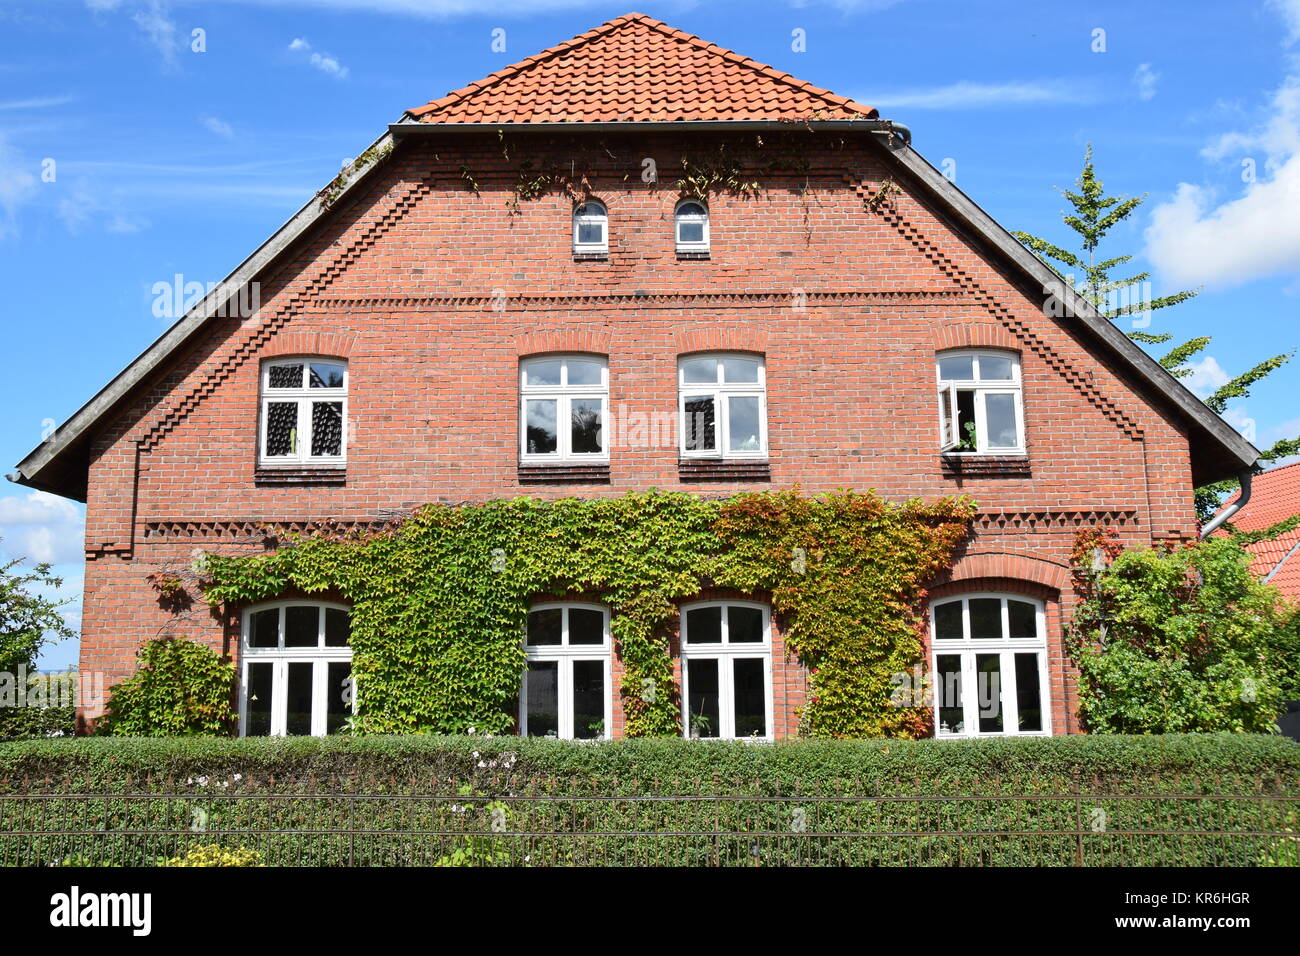 Schaumburg Walmdach Haus Stockfotografie - Alamy